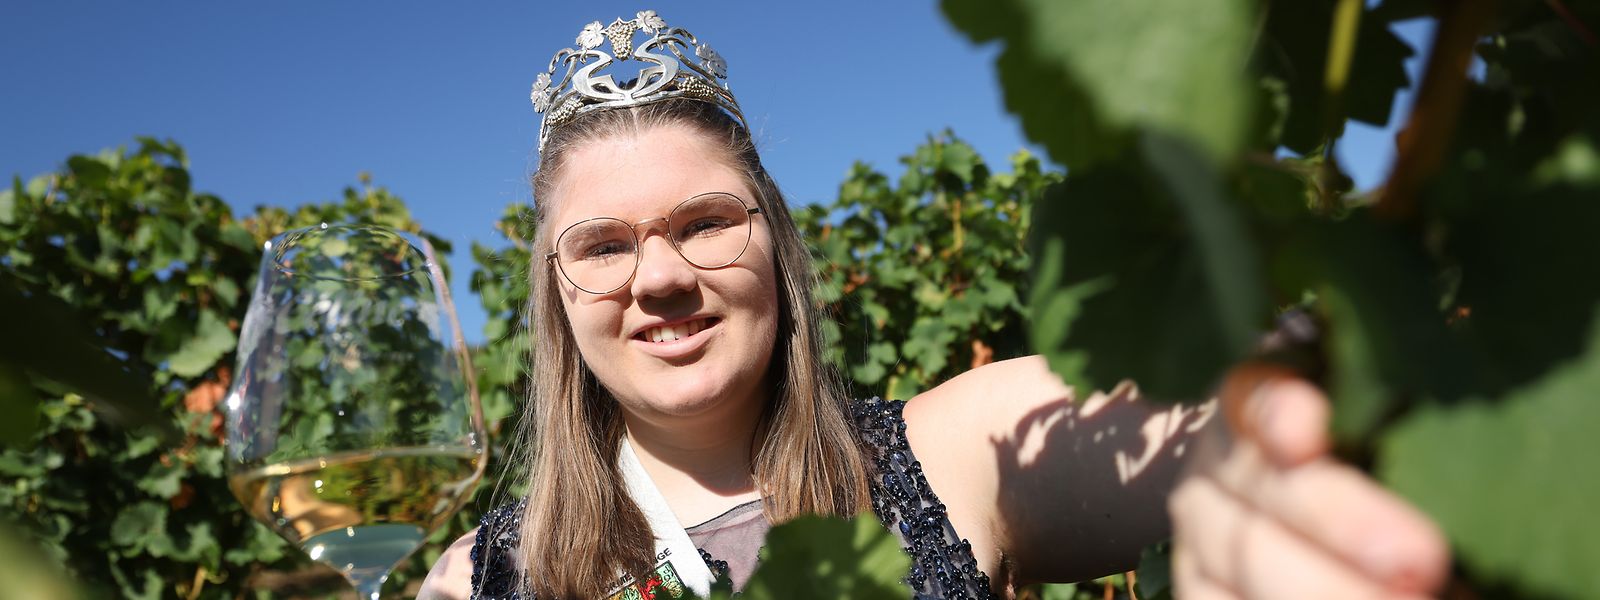 Céline Max (20) ist als Tochter eines Winzers mit dem Wein aufgewachsen. Am Freitag wird sie das Amt der Rieslingkönigin von Lara Kring übernehmen. 